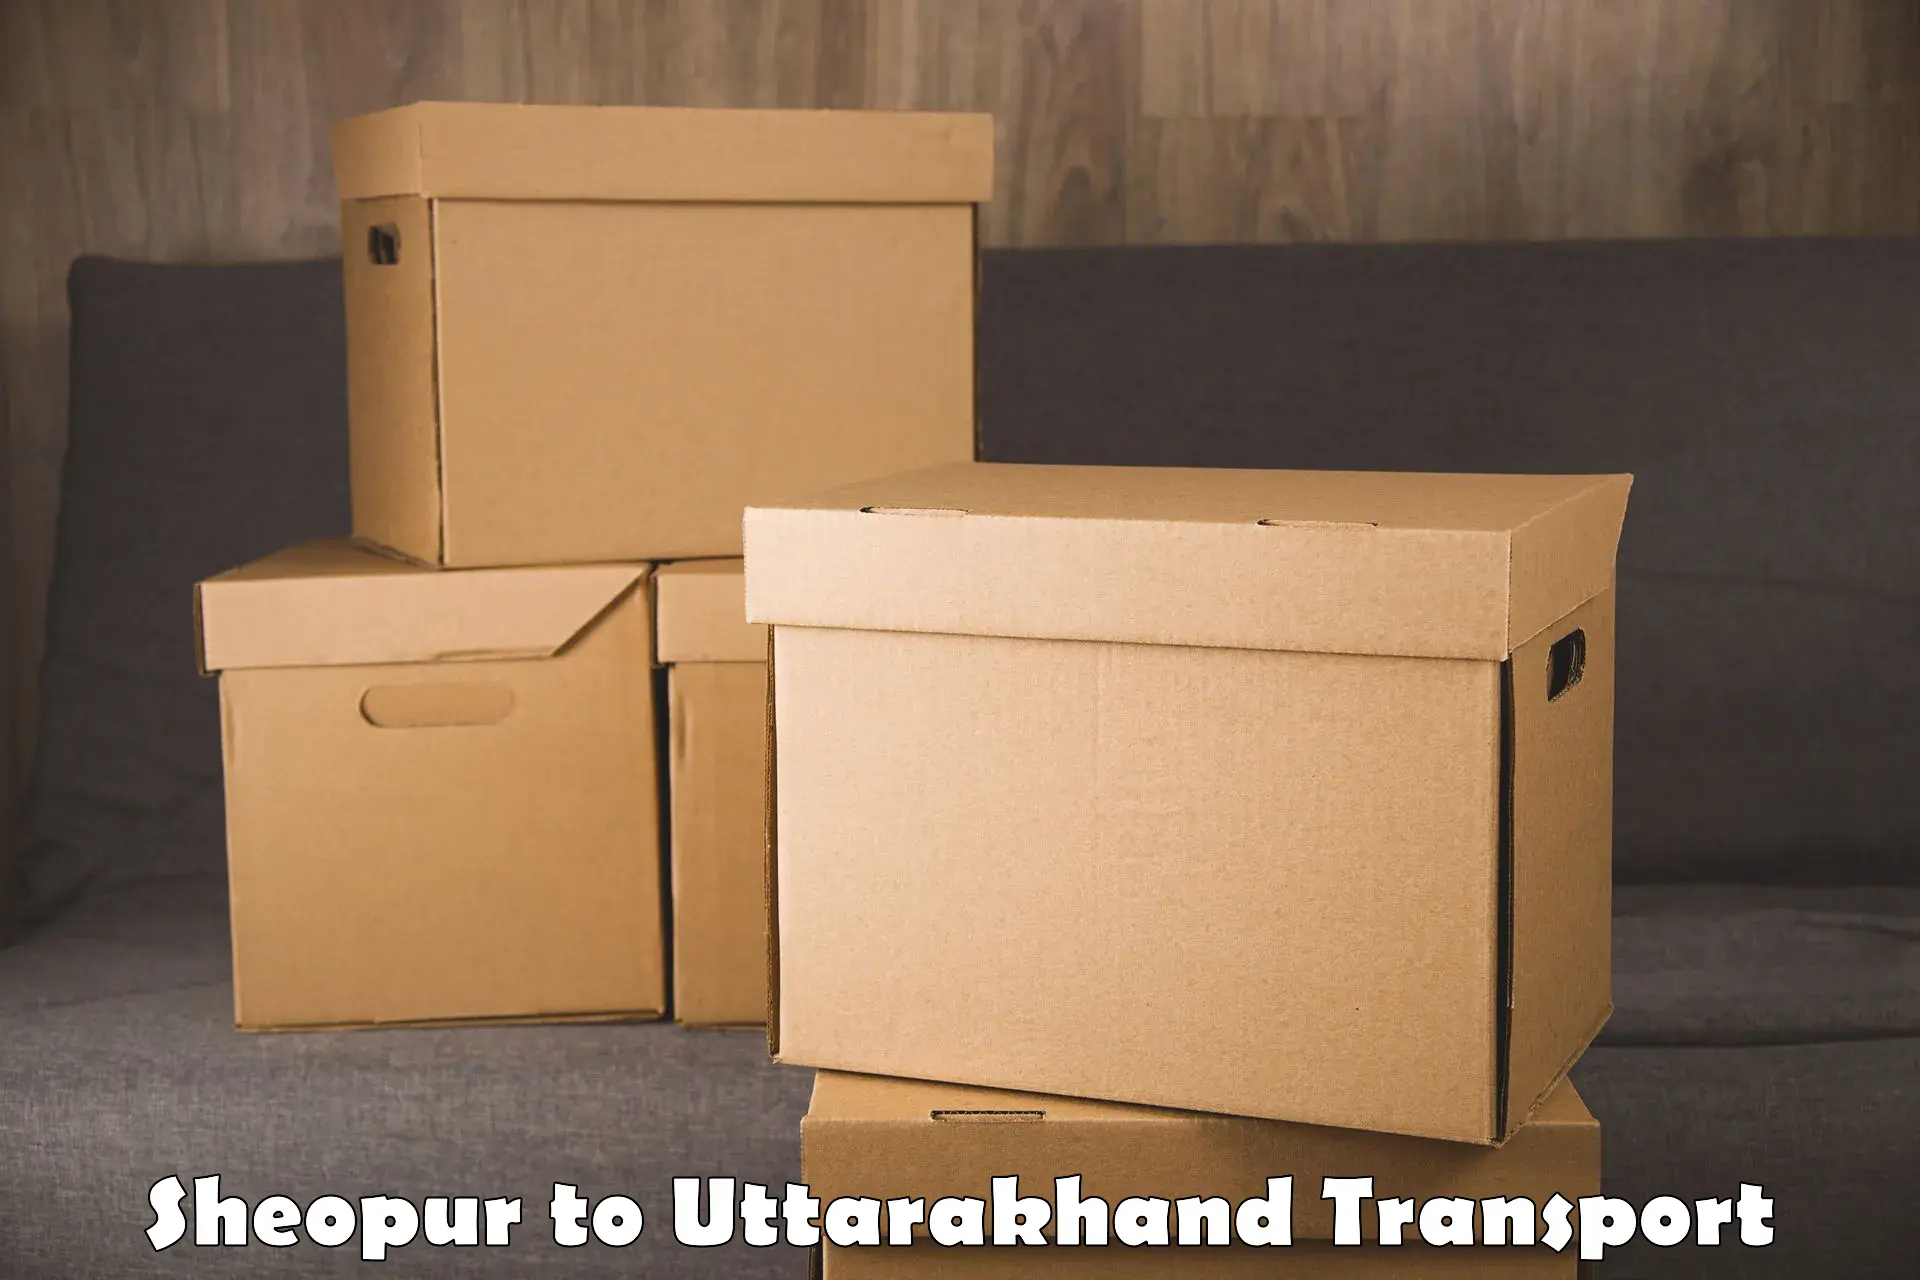 Two wheeler parcel service Sheopur to Uttarakhand